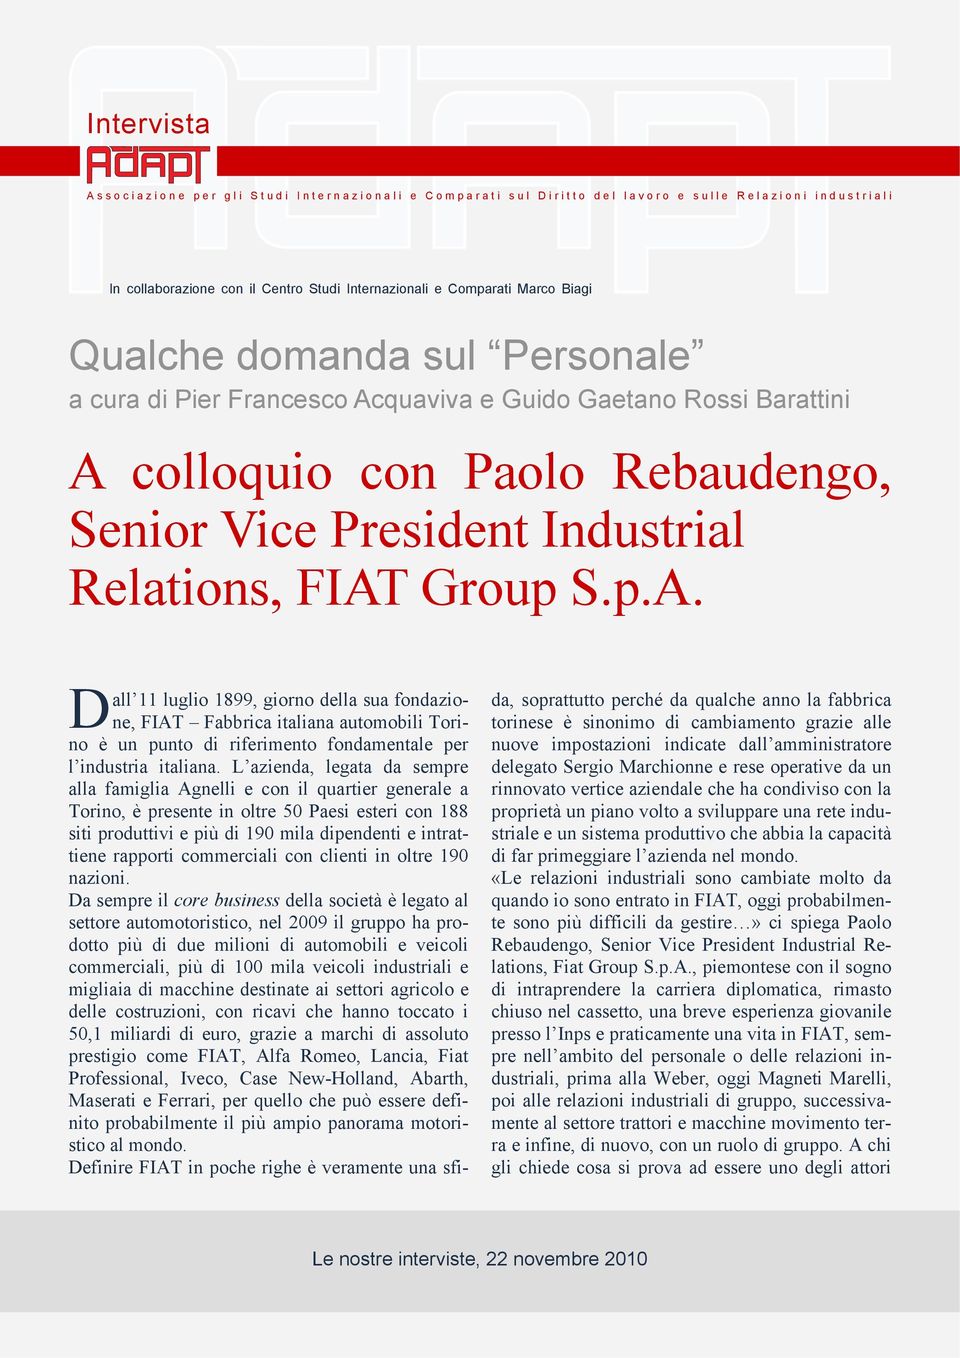 Rebaudengo, Senior Vice President Industrial Relations, FIAT